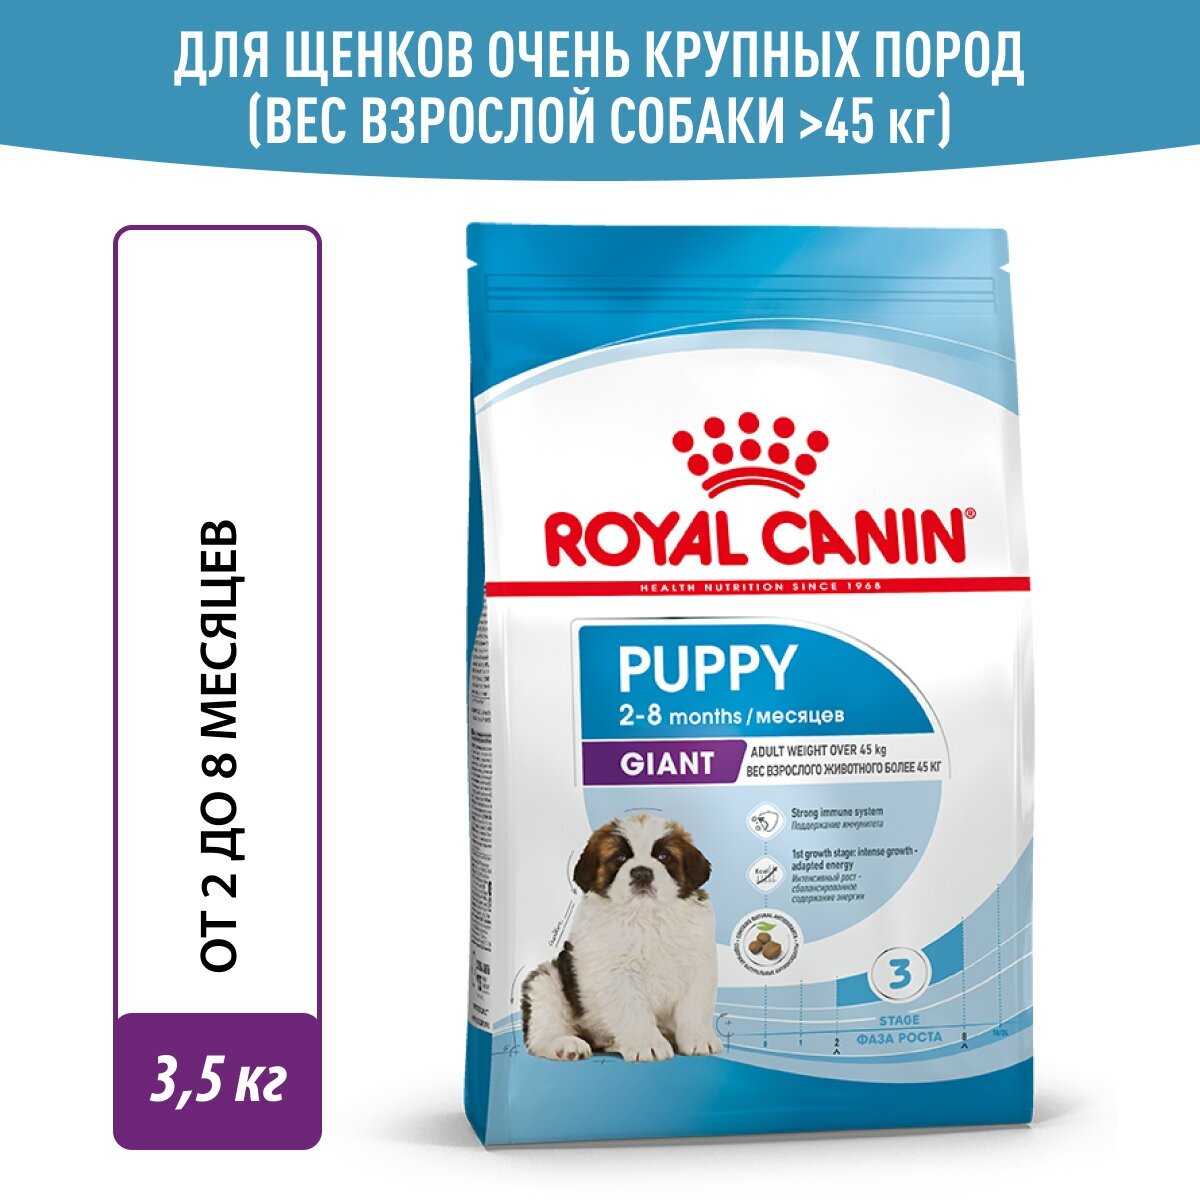 ROYAL CANIN GIANT PUPPY для щенков крупных пород (3,5 кг)